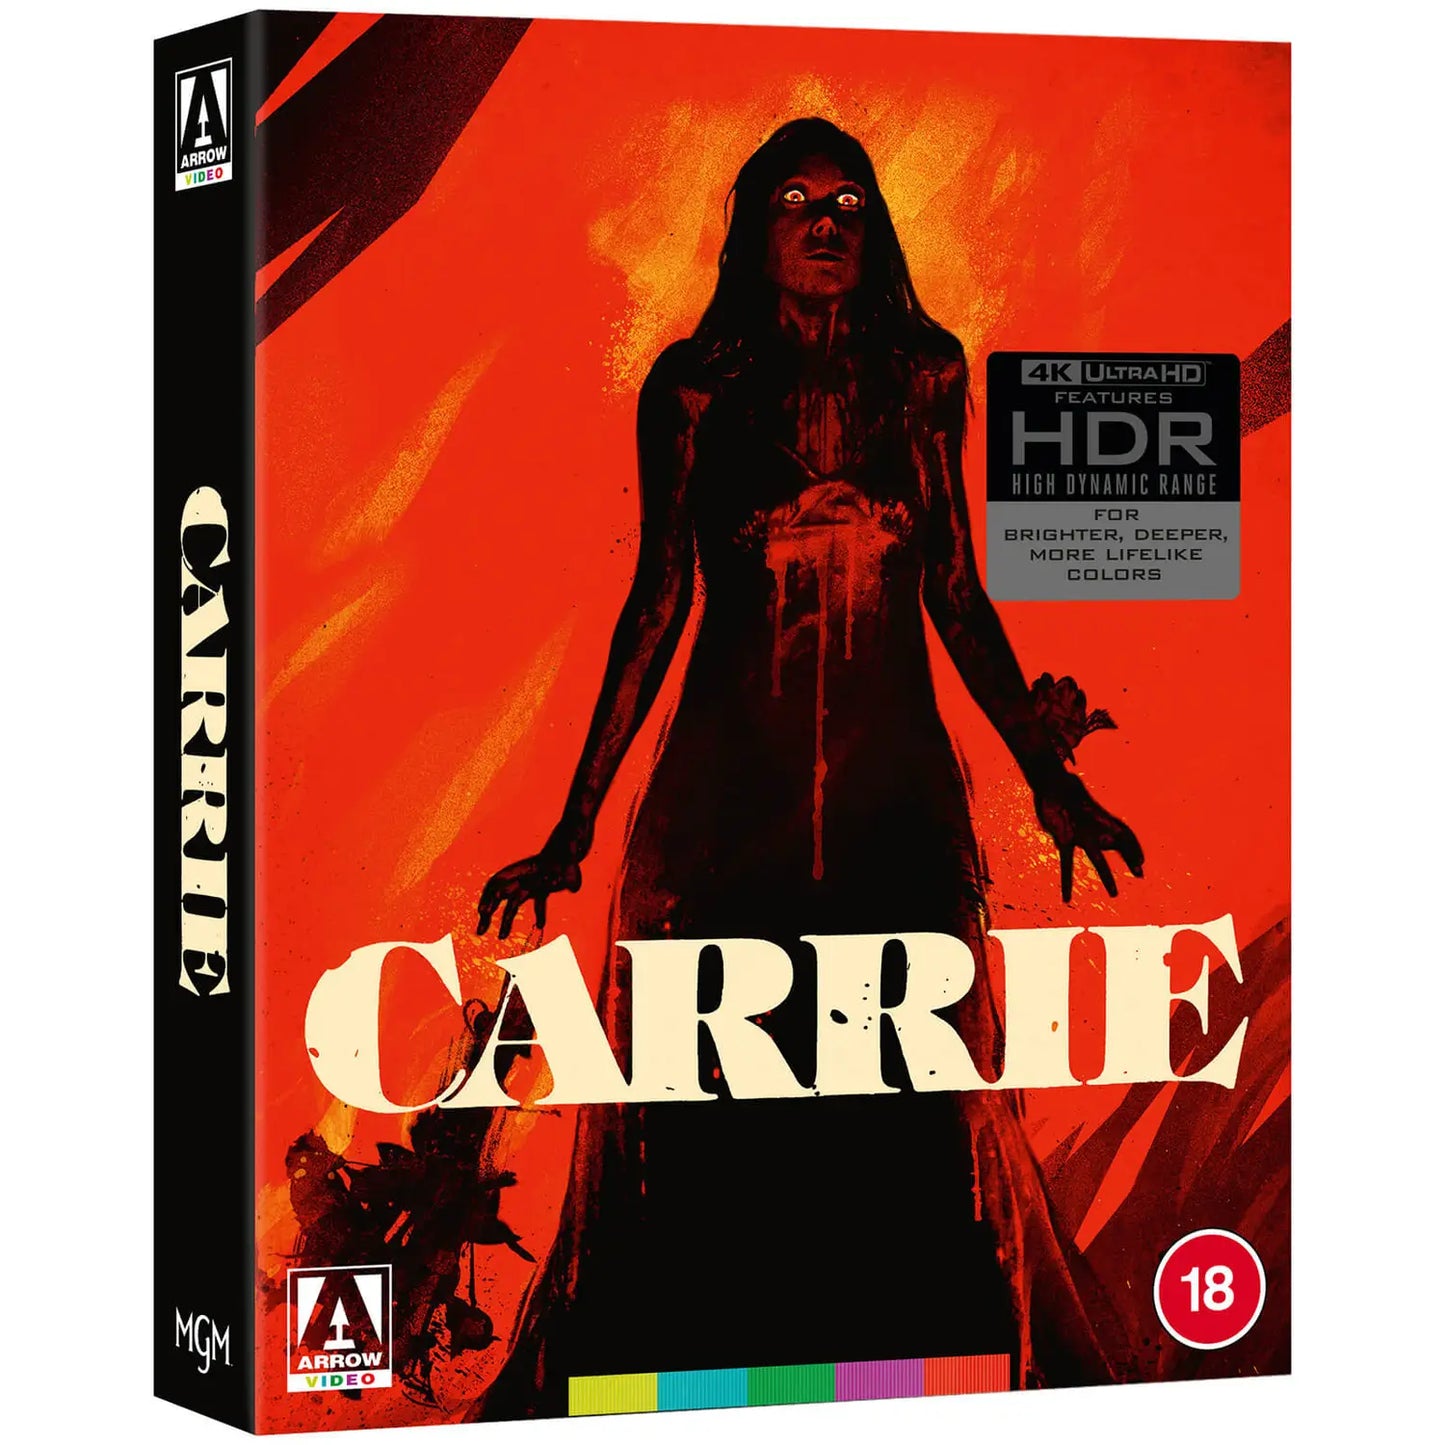 Carrie [4K UHD] [UK]